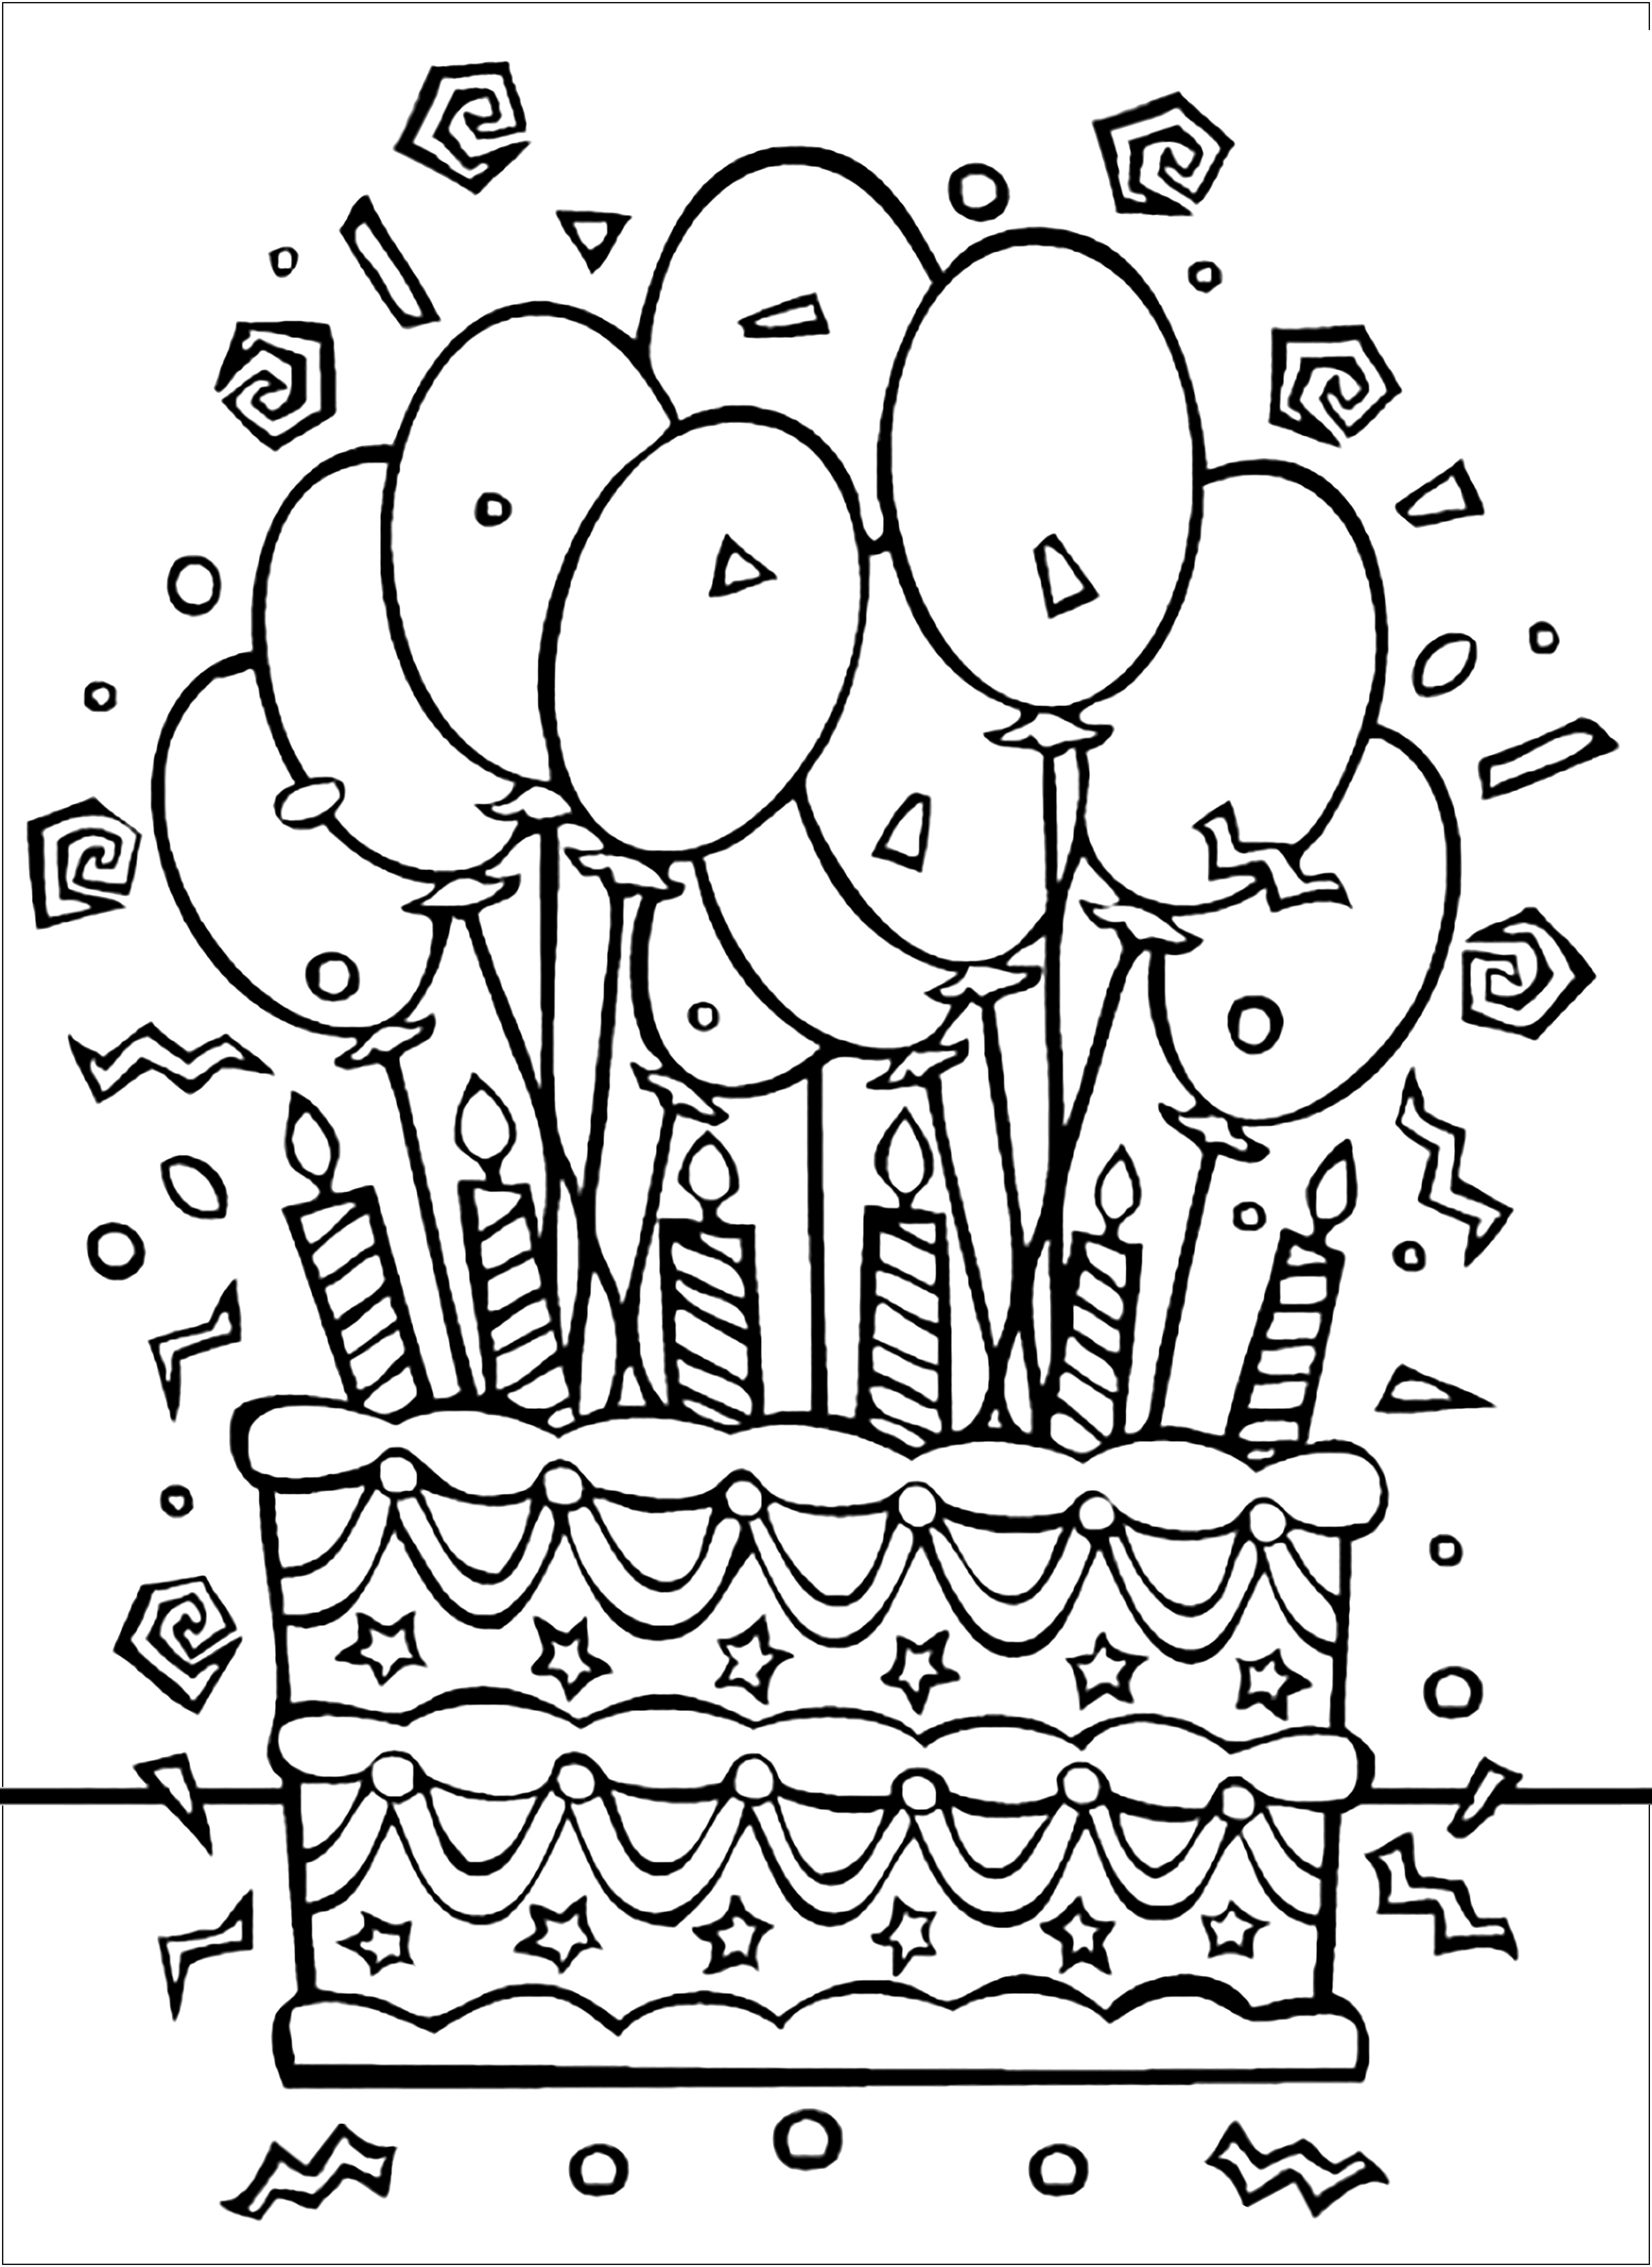 Bolo de aniversário e muitos balões. Vai ser uma festa de aniversário louca!